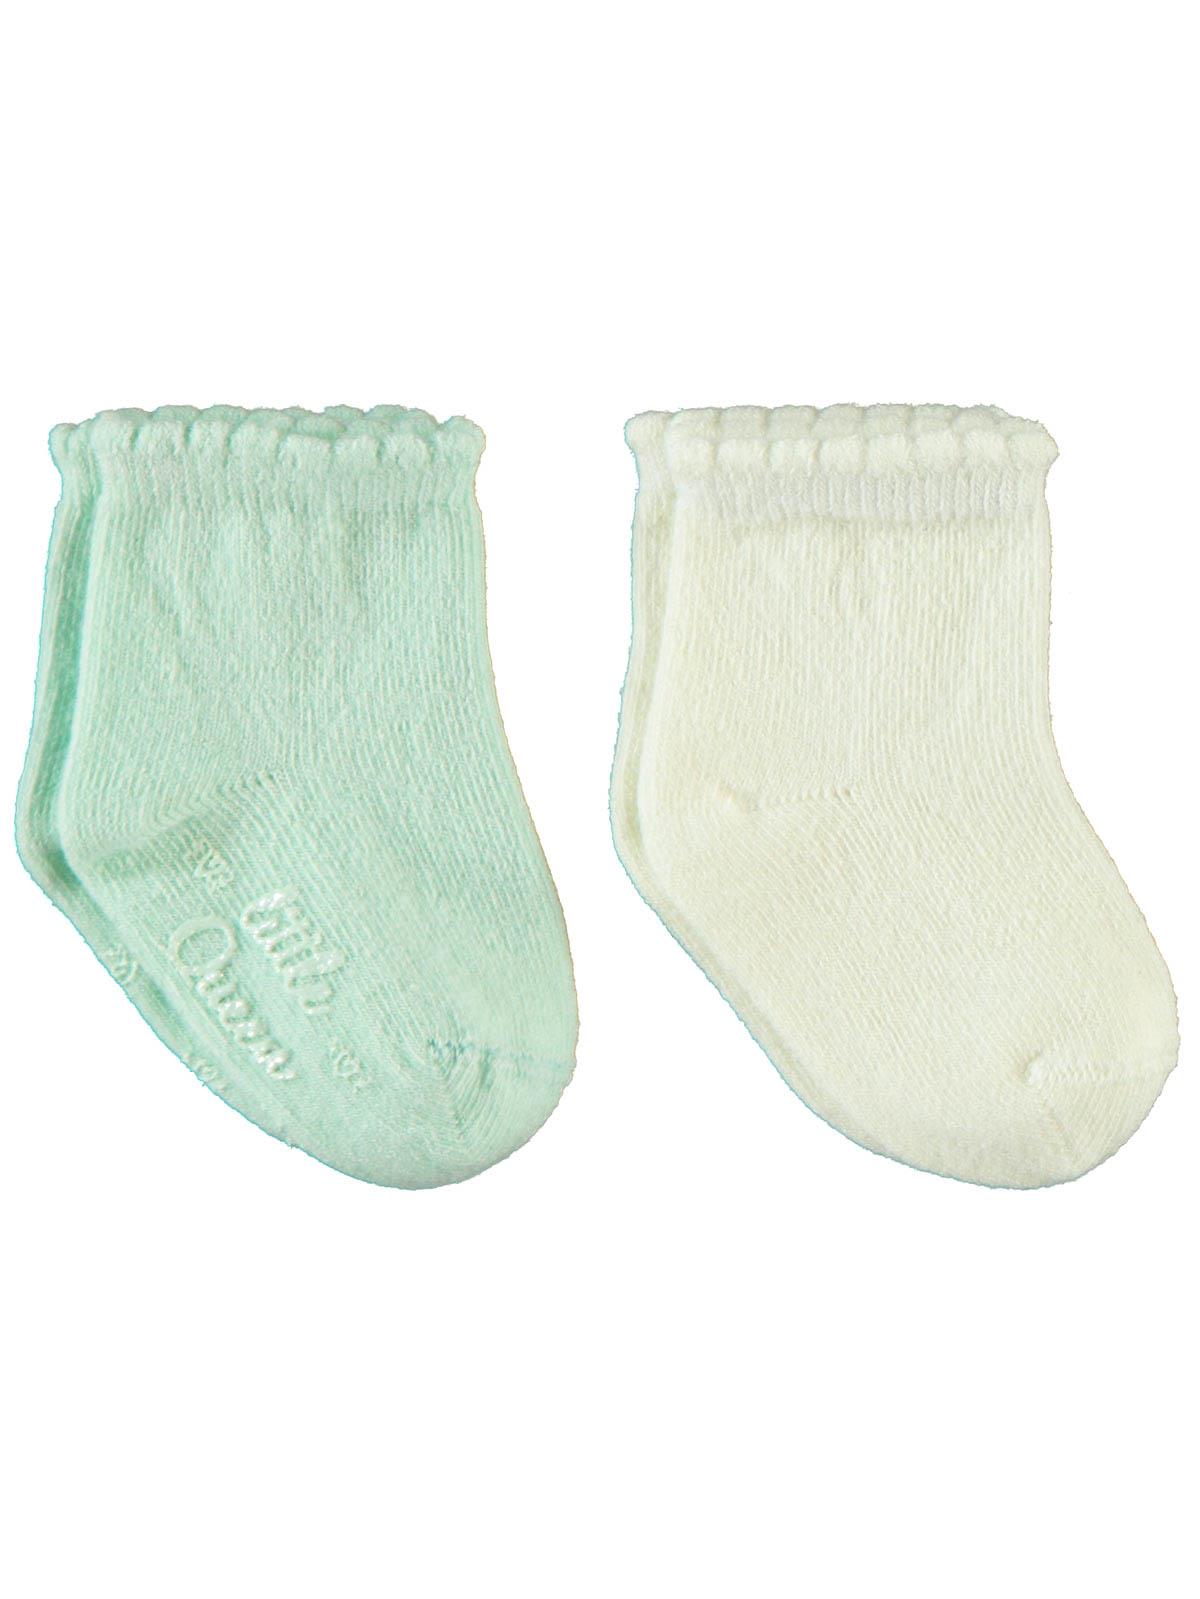 Katamino Kız Bebek 2'li Çorap 0-18 Ay Mint Yeşili